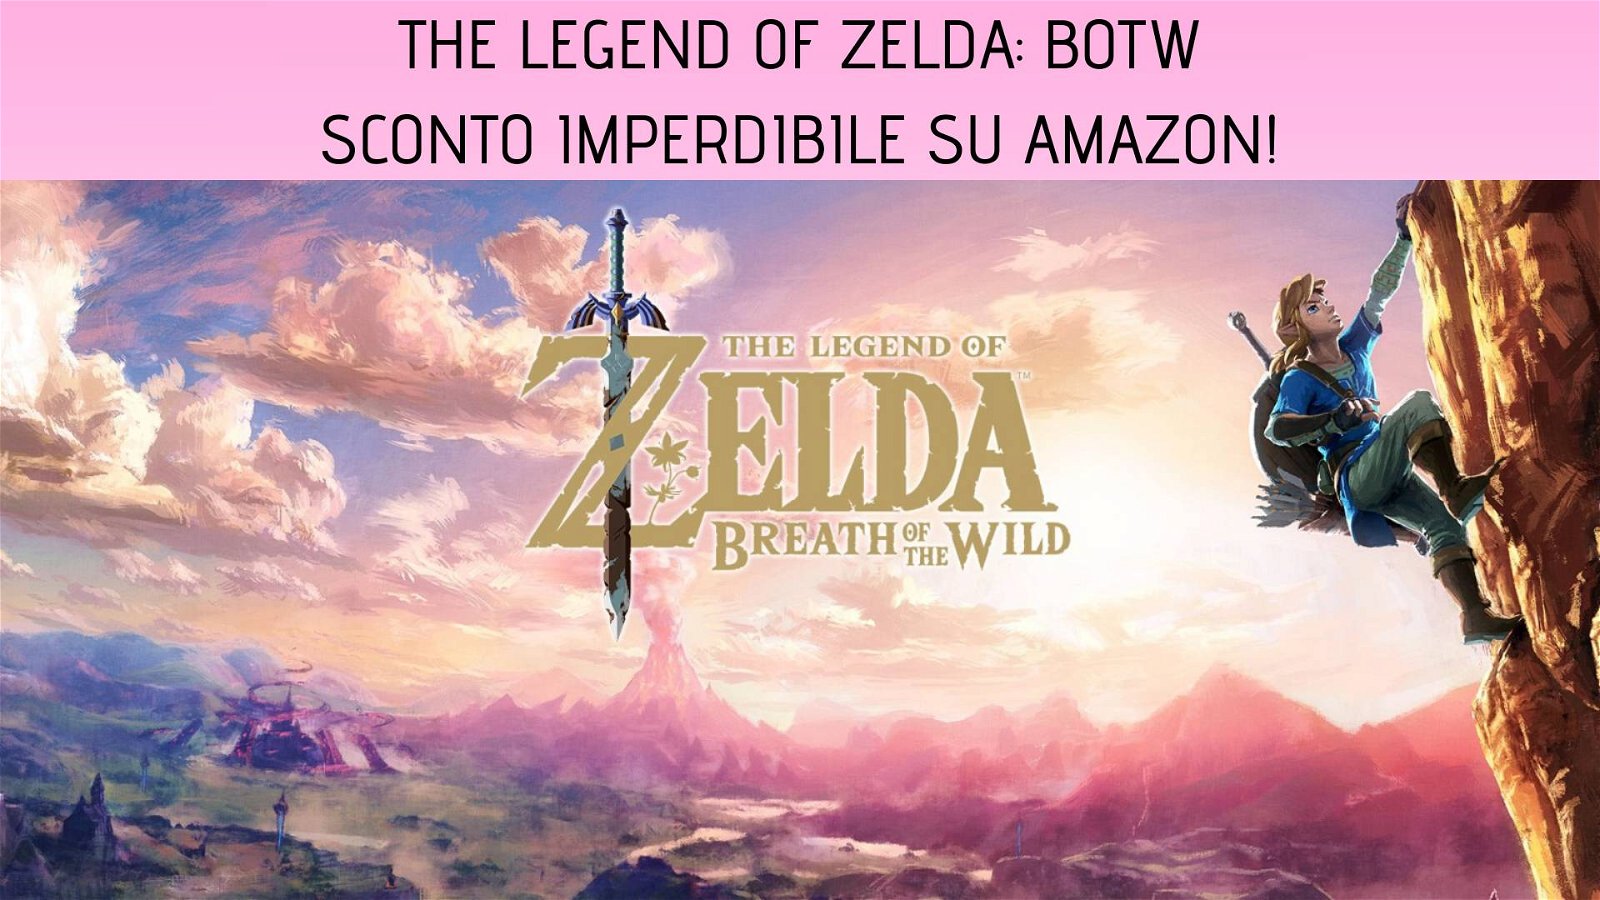 Immagine di The Legend of Zelda: Breath of the Wild in offerta a soli 49 euro su Amazon!